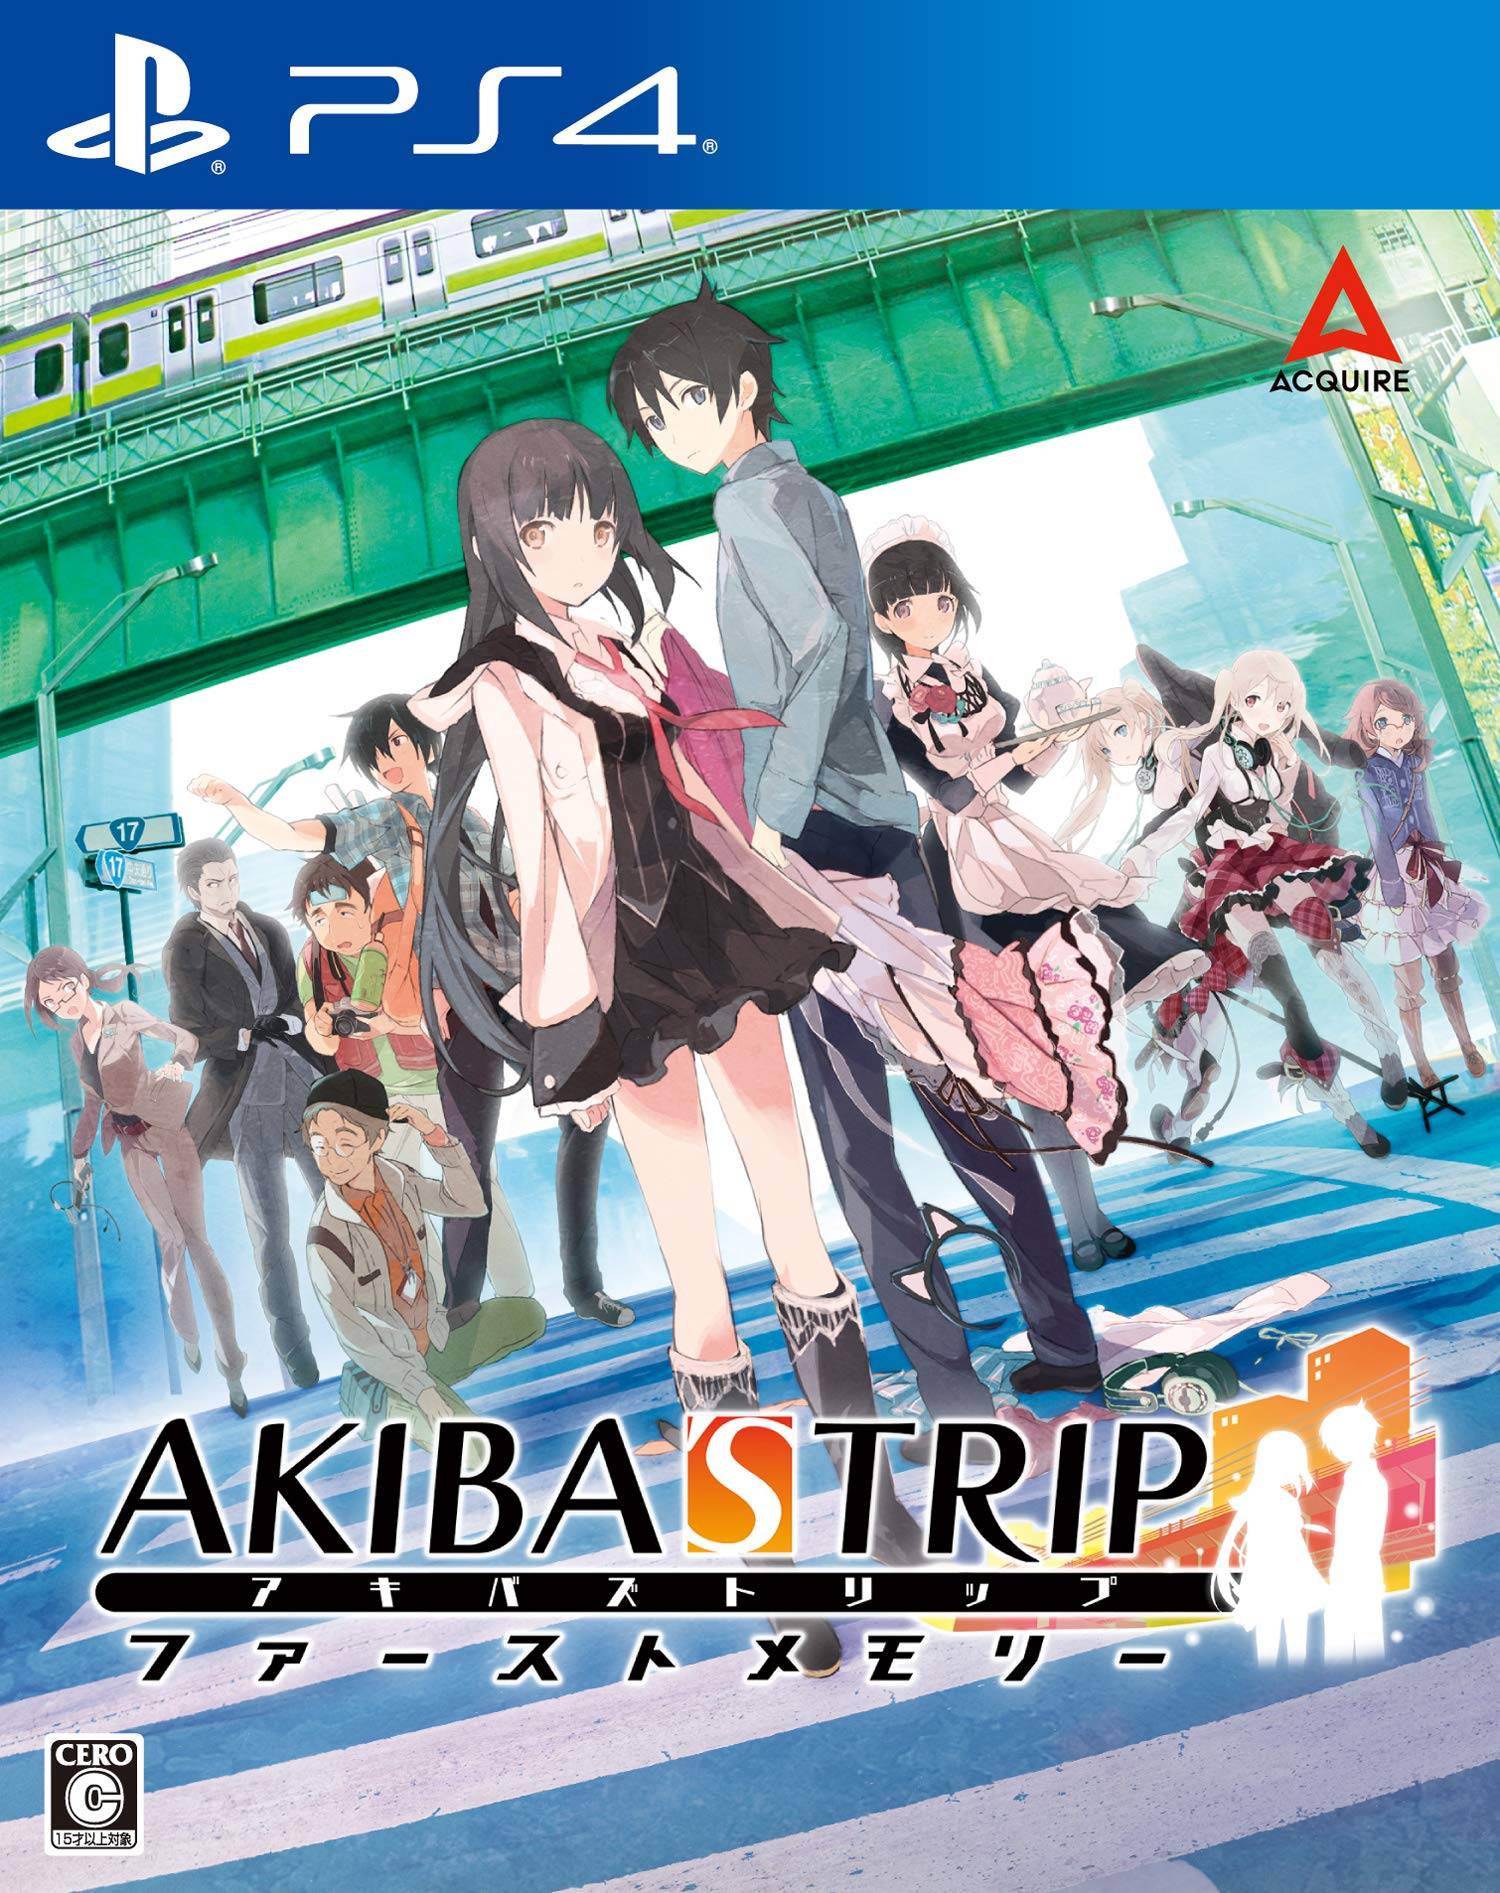 akiba's trip first memory